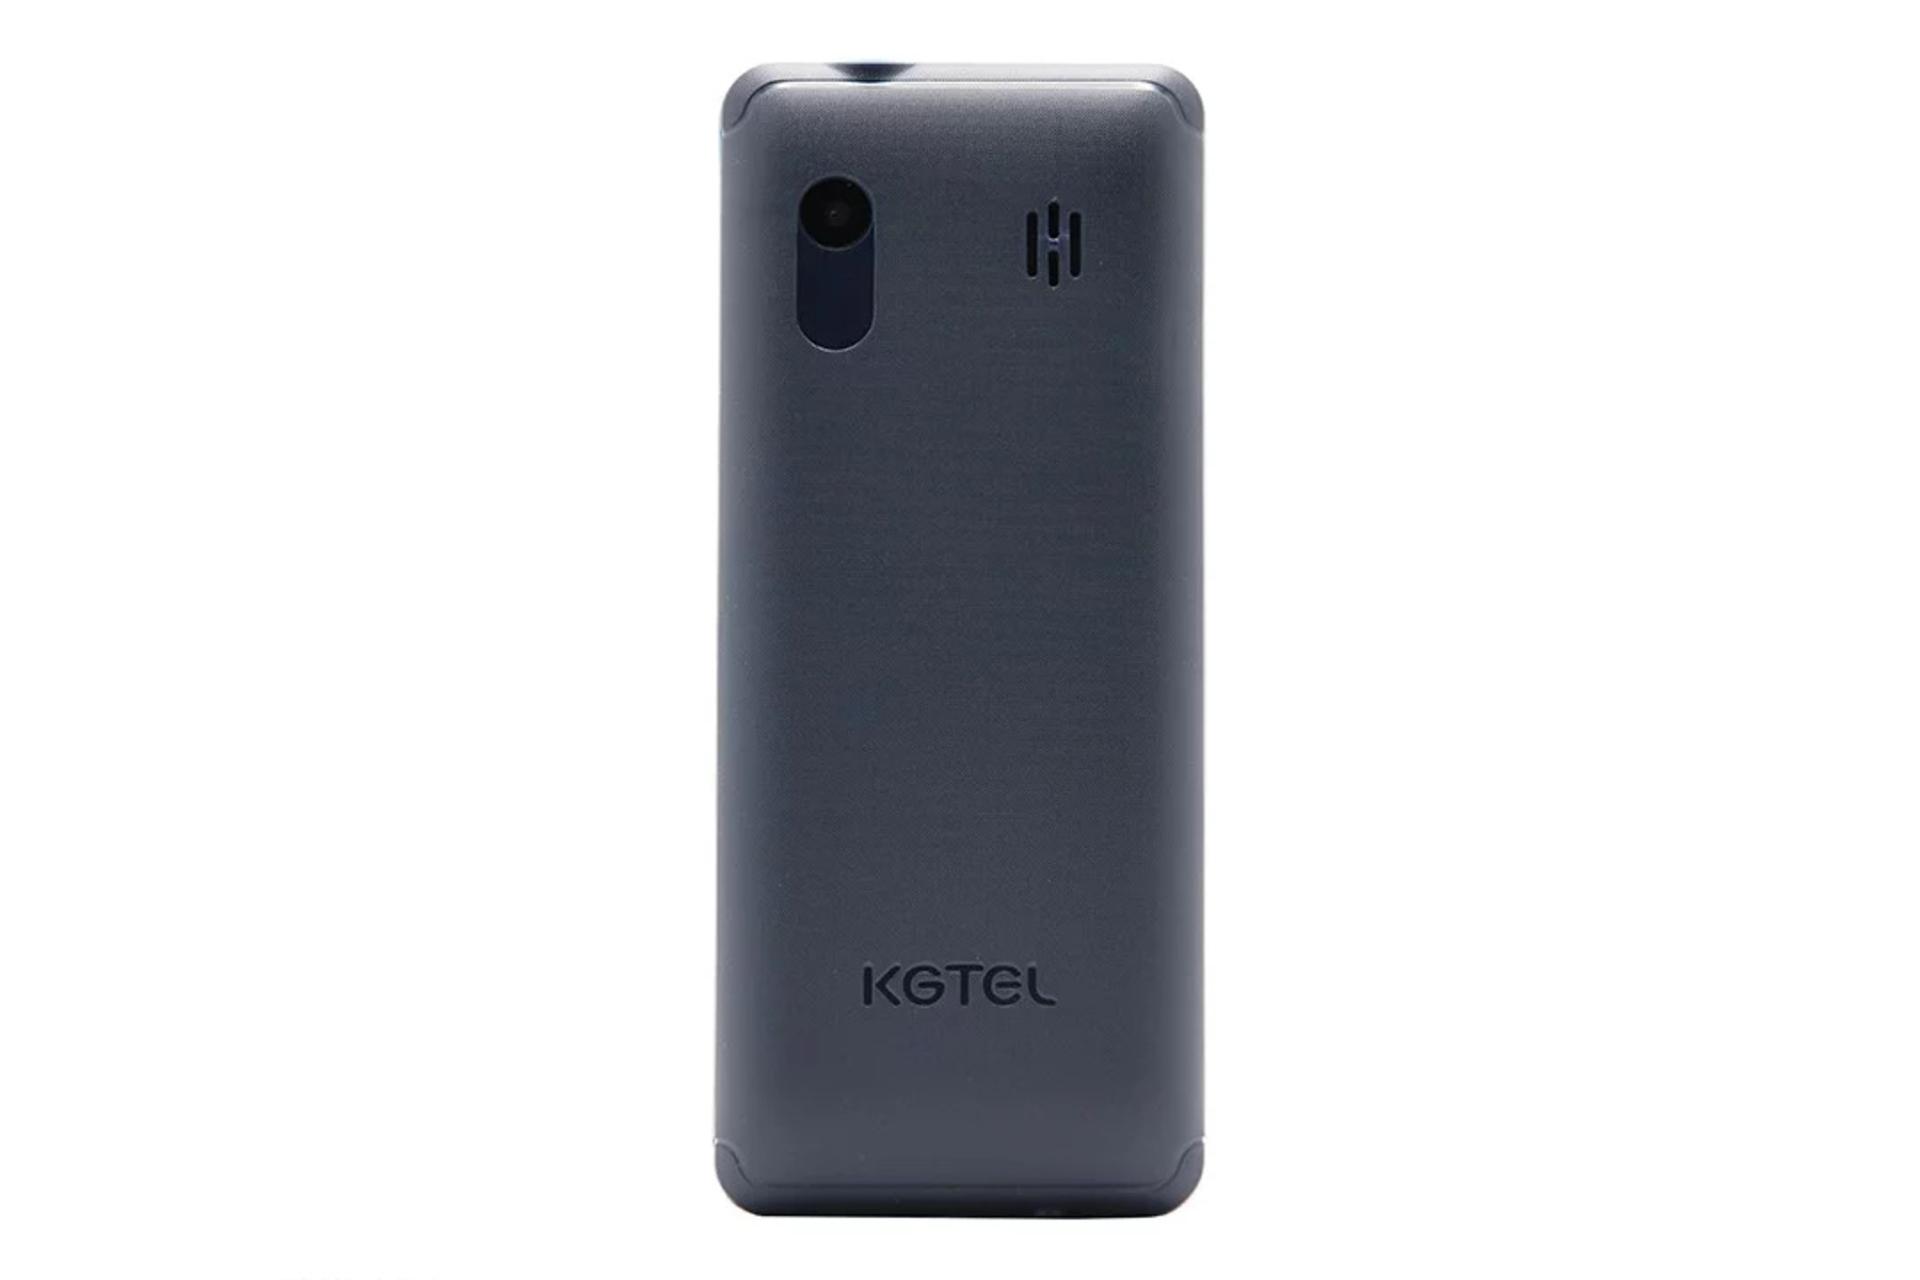 پنل پشت گوشی موبایل کاجیتل KGTEL K20